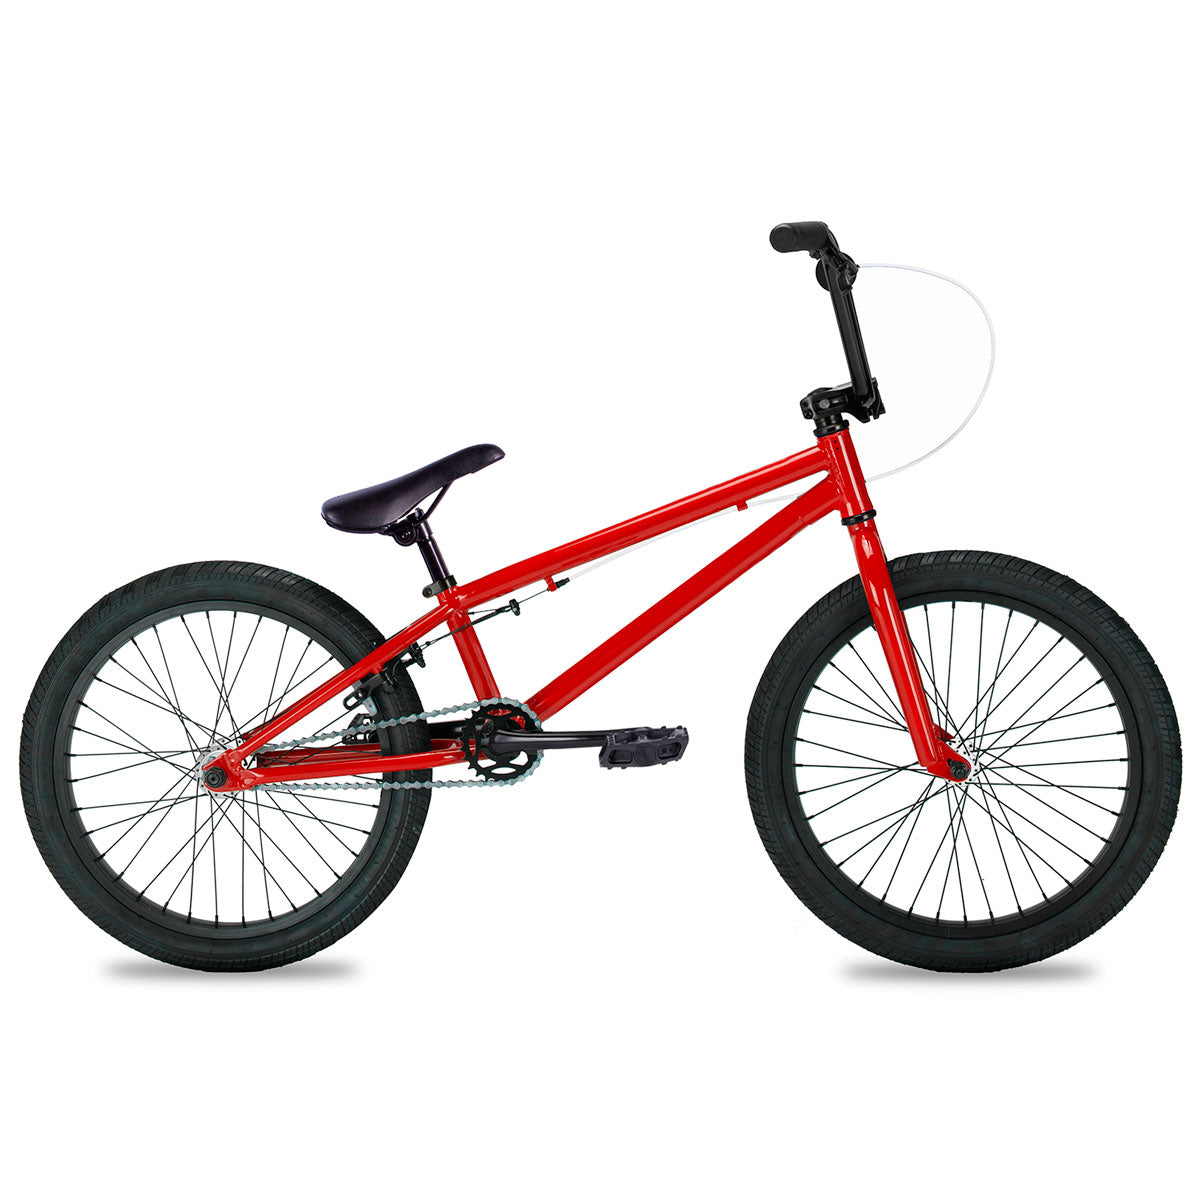 Beginner Freestyle BMX Bike Red